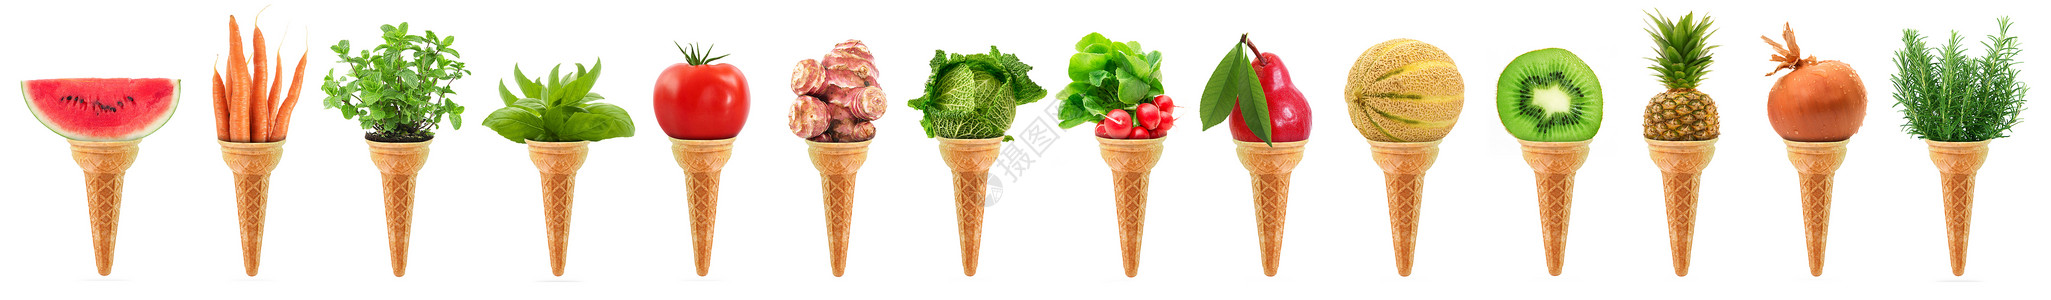 蔬菜拼图素材美味的冰淇淋冰淇淋 长长的拼图背景